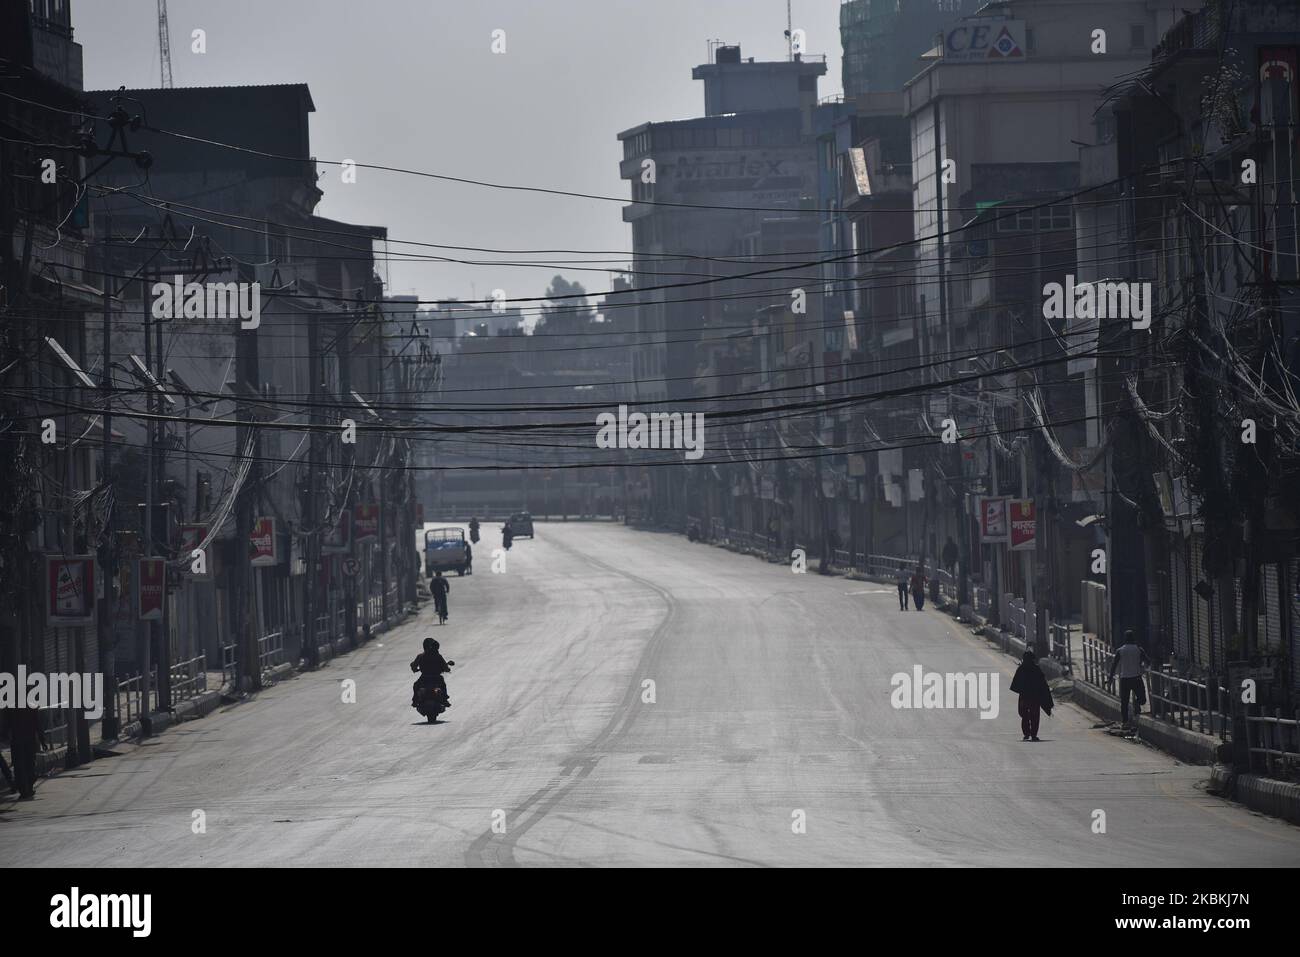 Ein Blick auf die Empty Road Highway während des dritten Tages einer landesweiten 7-tägigen Sperrung, da Bedenken über die Ausbreitung des Corona Virus (COVID-19) in Kathmandu, Nepal, am Donnerstag, 26. März 2020, bestehen. (Foto von Narayan Maharjan/NurPhoto) Stockfoto